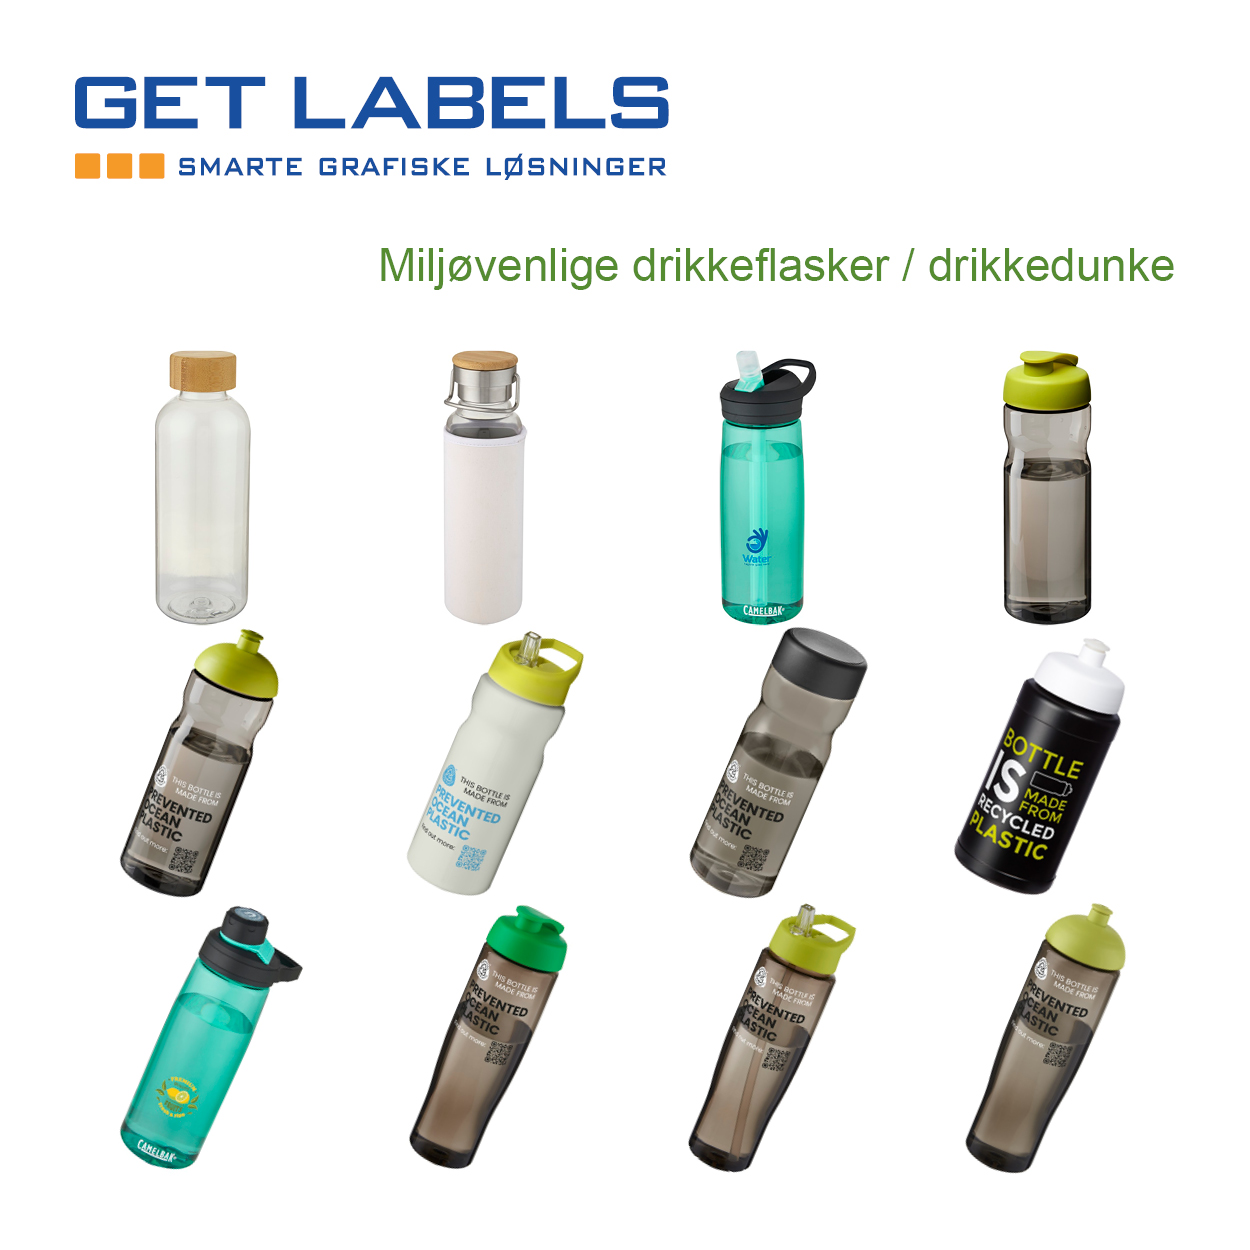 Miljørigtige drikkeflasker med logotryk. Getlabels.dk